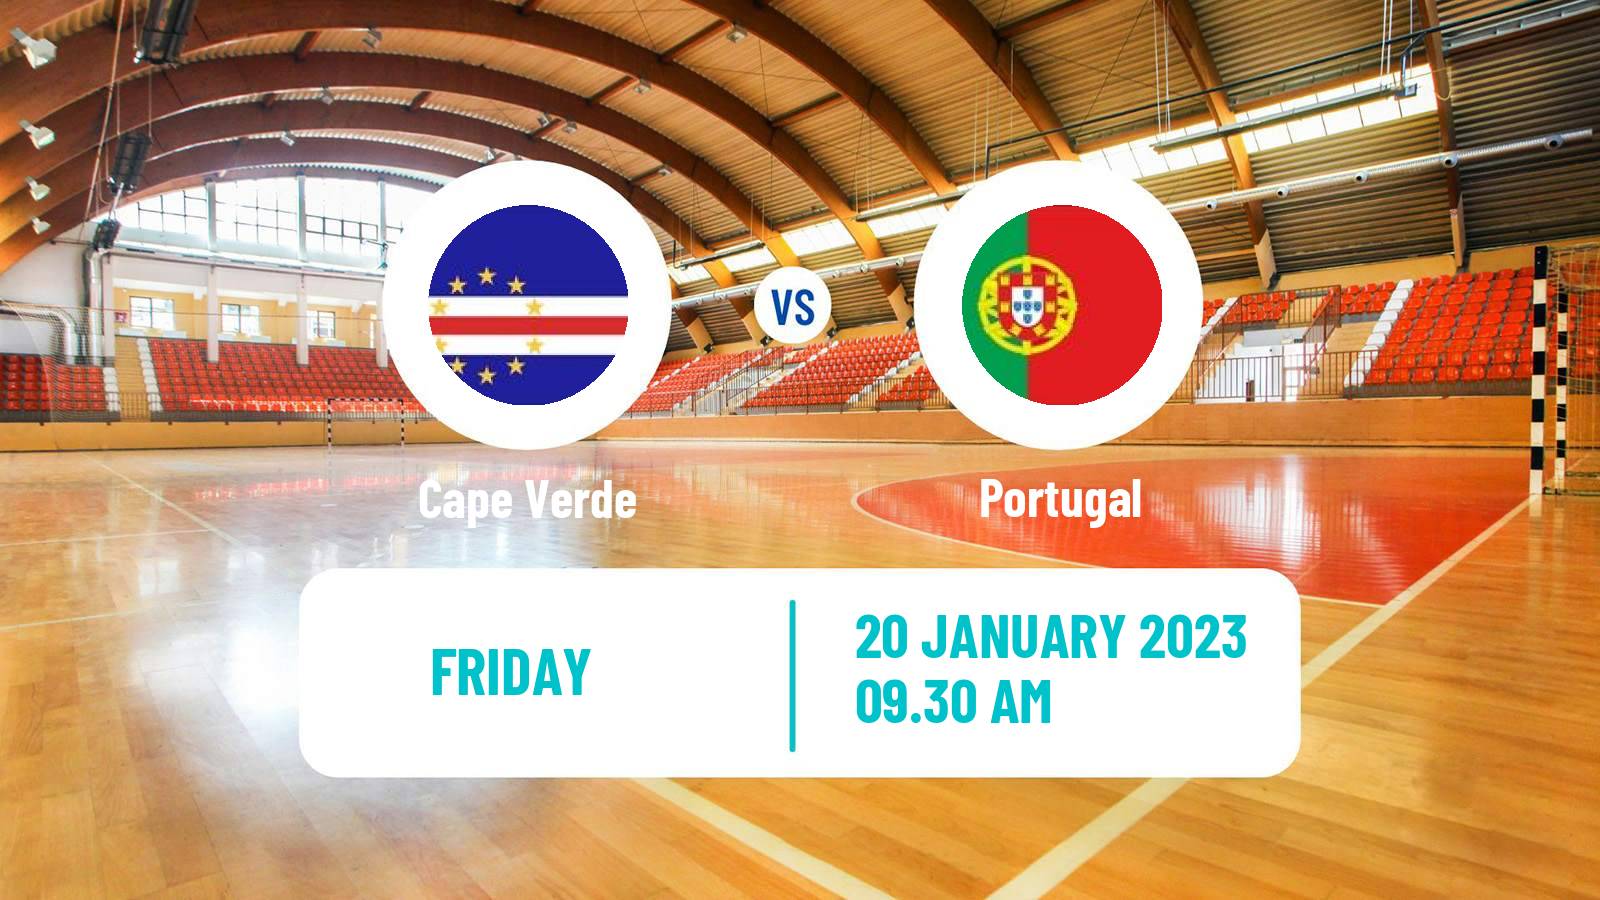 Handball Handball World Championship Cape Verde - Portugal